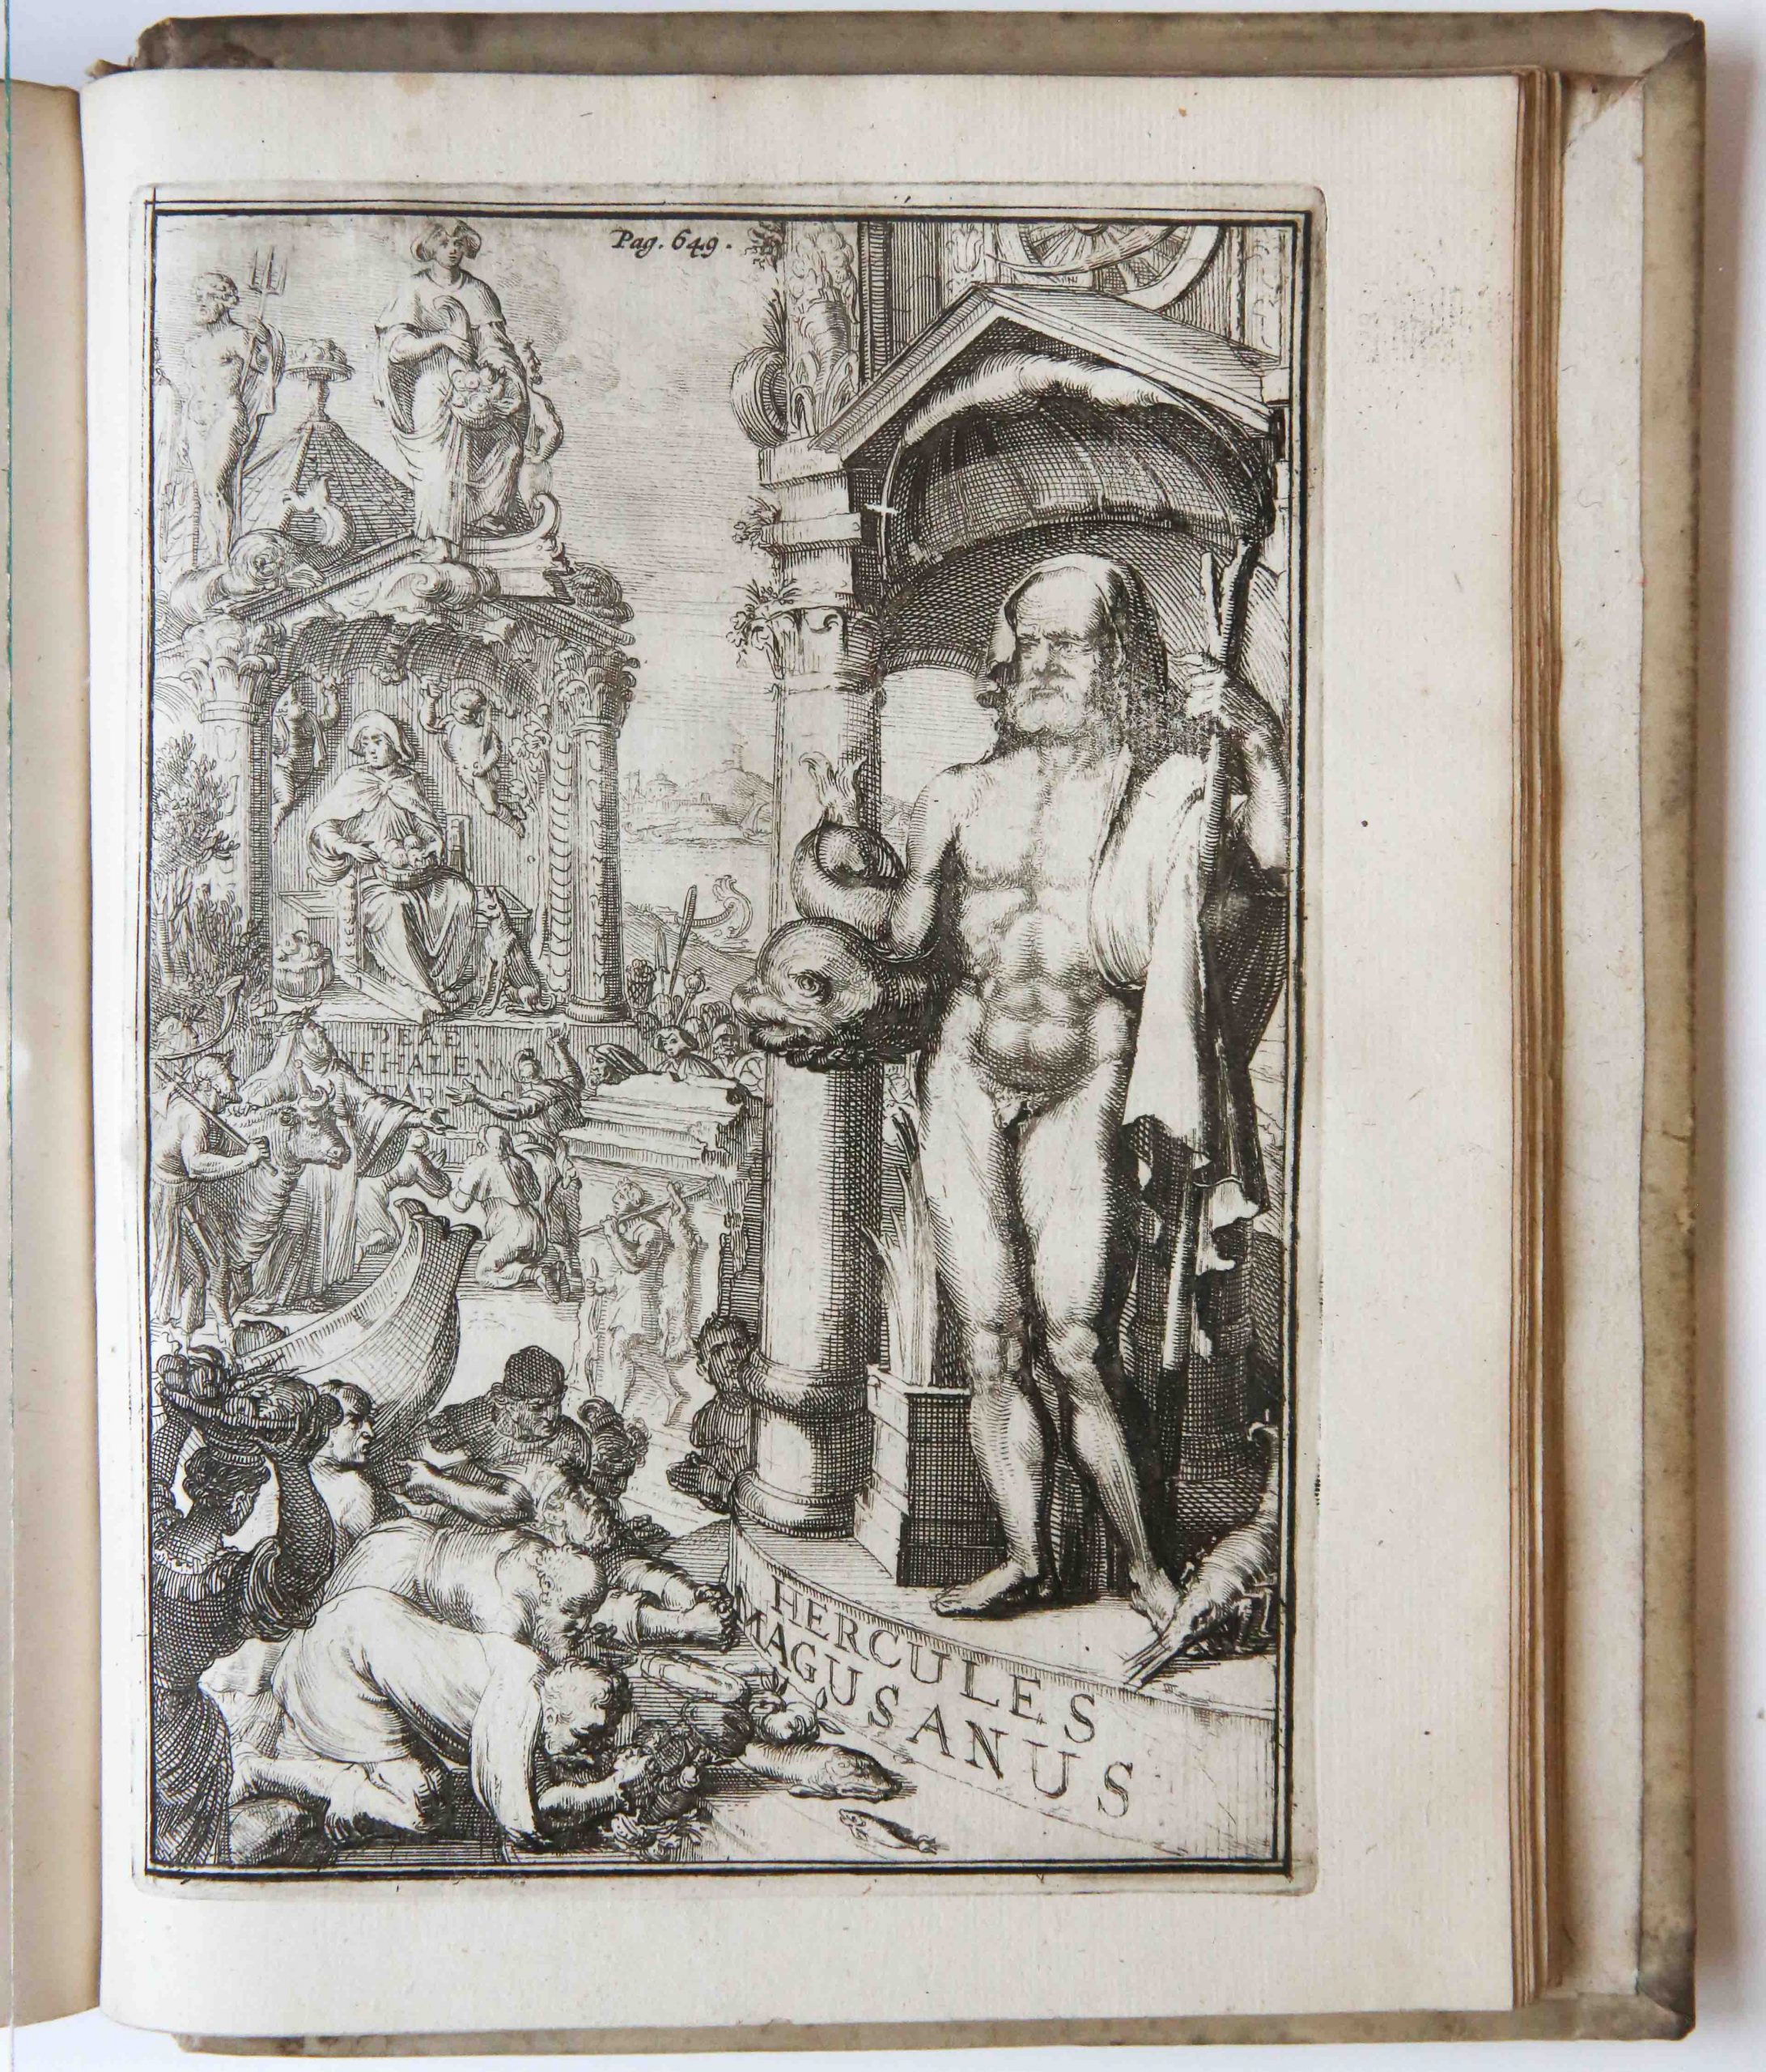 Gallaeus, Servatius; Hooghe, Romeyn de (1645-1708) - Dissertationes de Sibyllis, earumque oraculis. Amsterdam, Hendrik en wed. Dirk Boom, 1688, [40] + 658 + [26] pp.